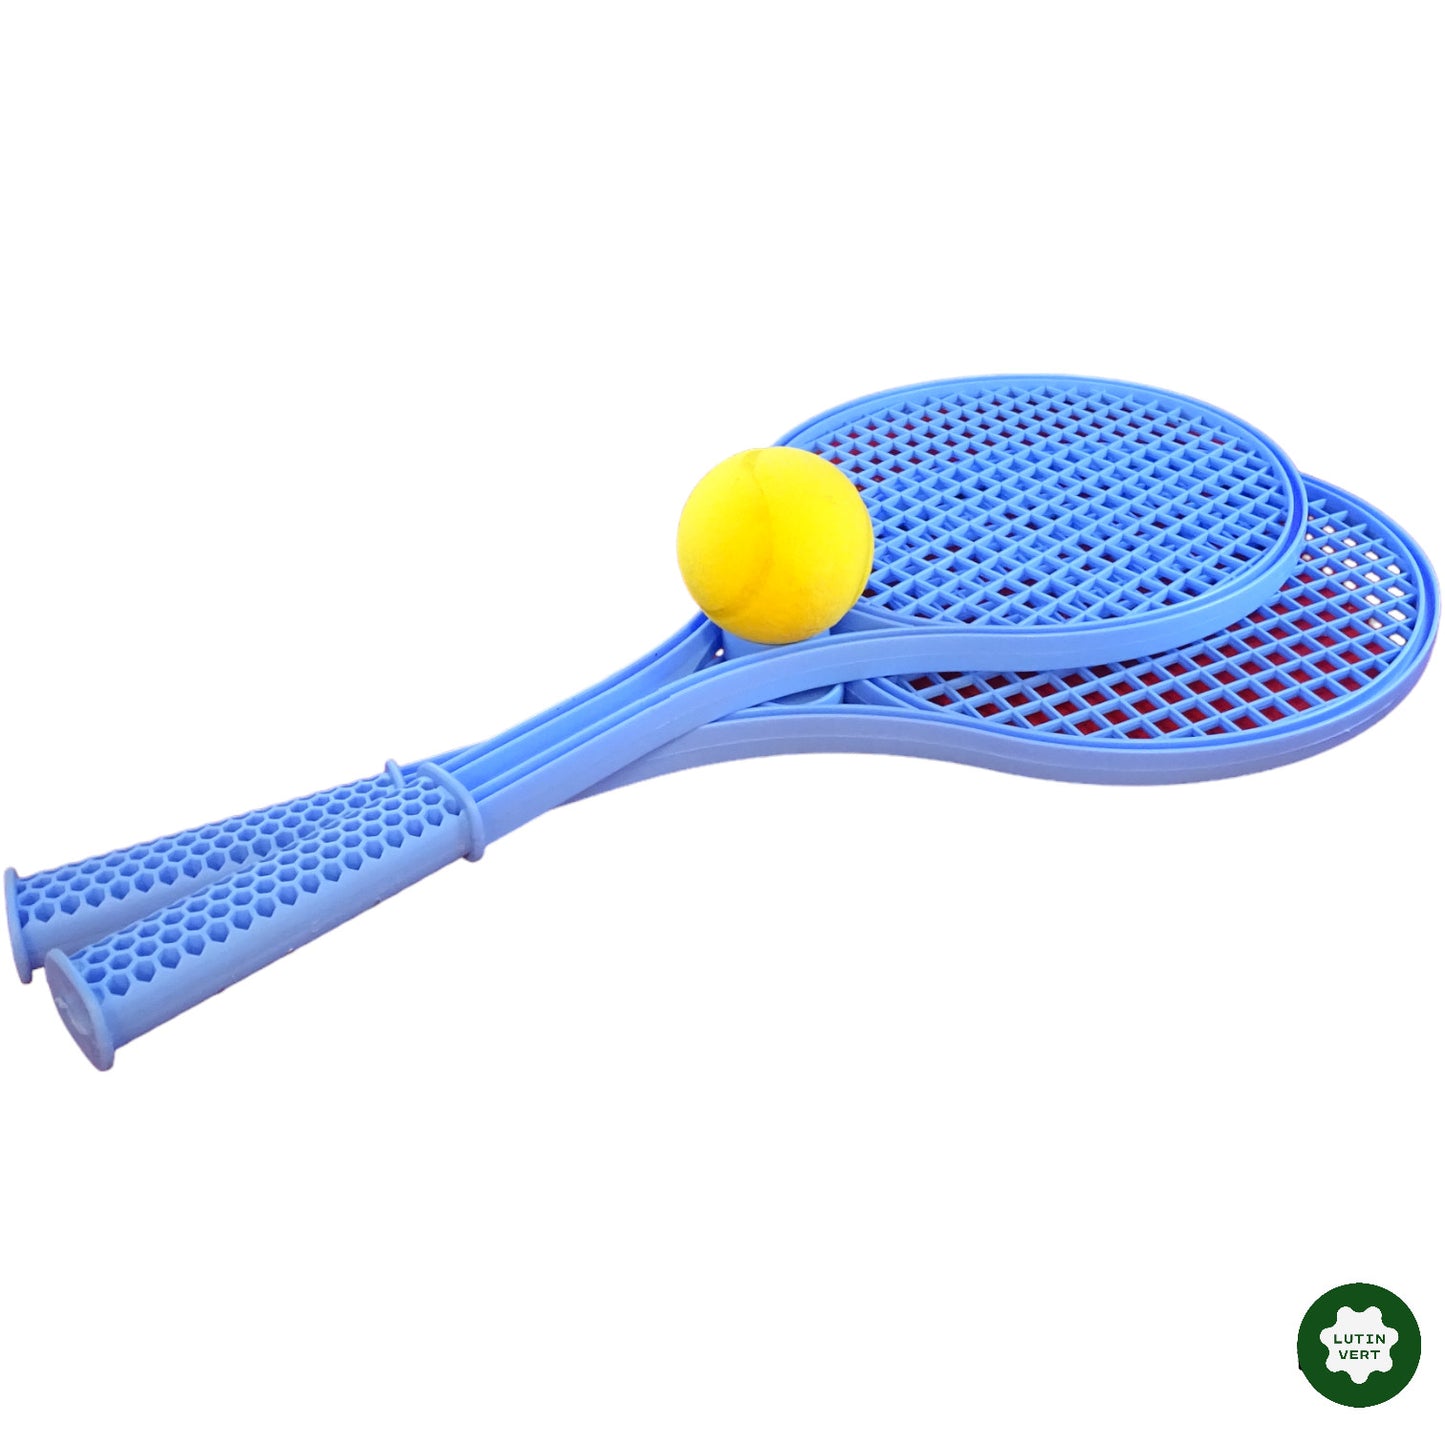 Raquettes de tennis en plastique d'occasion  - Dès 5 ans | Lutin Vert